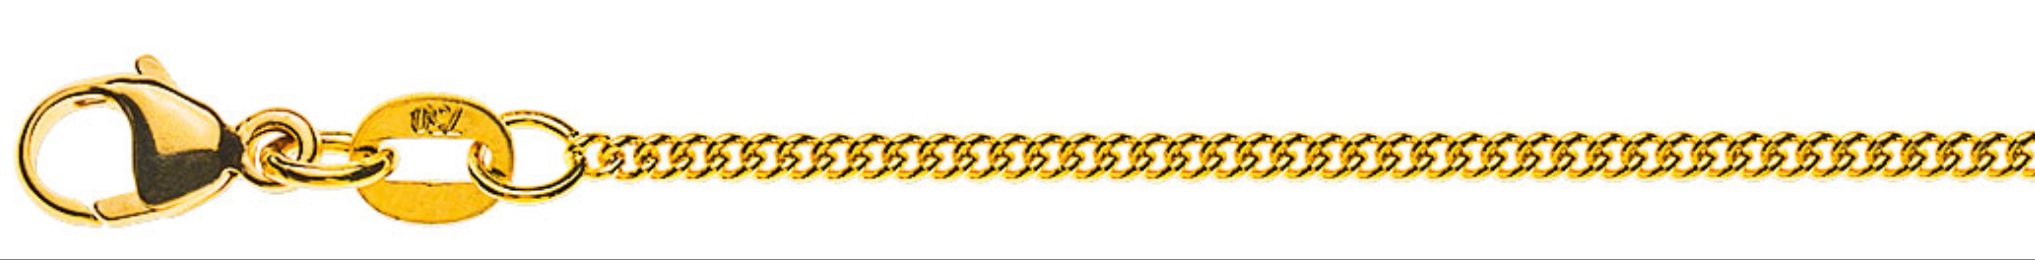 AURONOS Prestige Collier en or jaune 18K chaîne blindée ronde 40cm 1.6mm